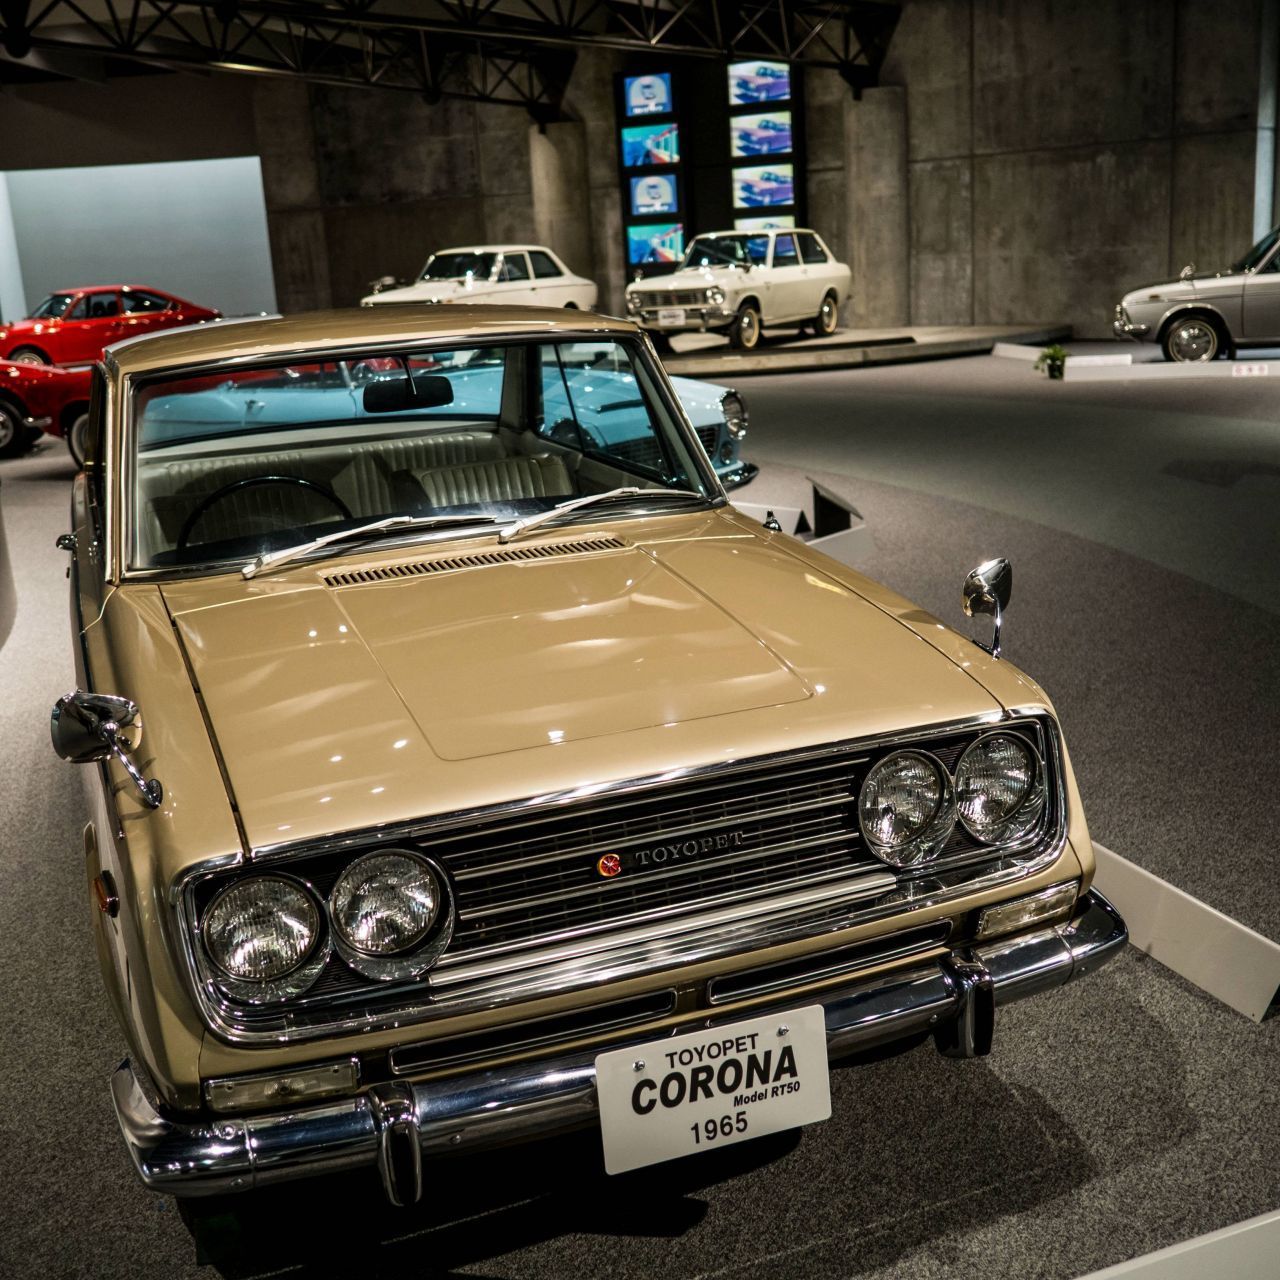 Der erste Toyota Corona rollte 1957 in Japan auf den Markt. Genauer gesagt, handelte es sich um den Toyopet Corona. Die dritte Generation der Fahrzeuge ging 1964 in Serie, 1965 kam das Oberklassen-Modell nach Europa. Knapp 30 Jahre später war mit Corona auf 4 Rädern Schluss.